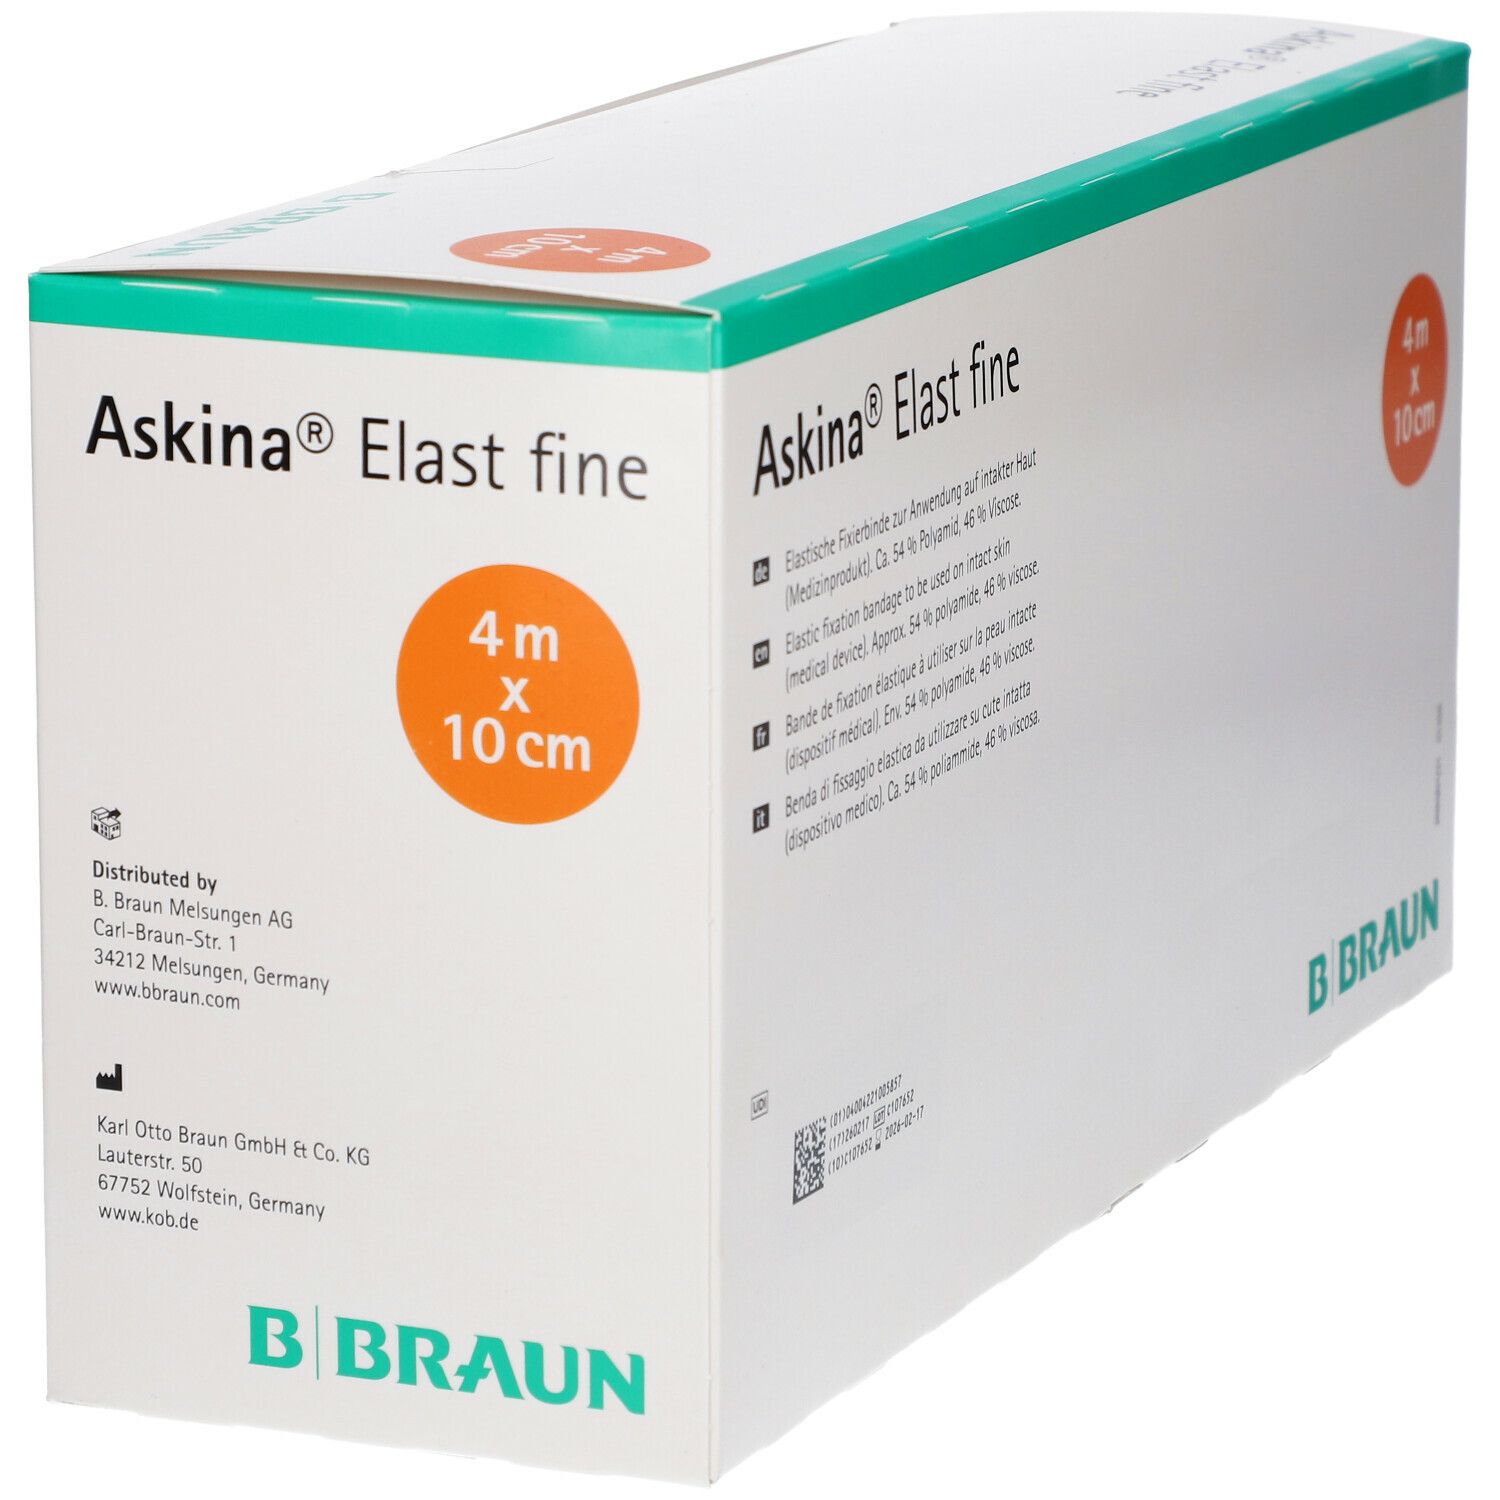 Askina® Elast fine Fixation Bandage